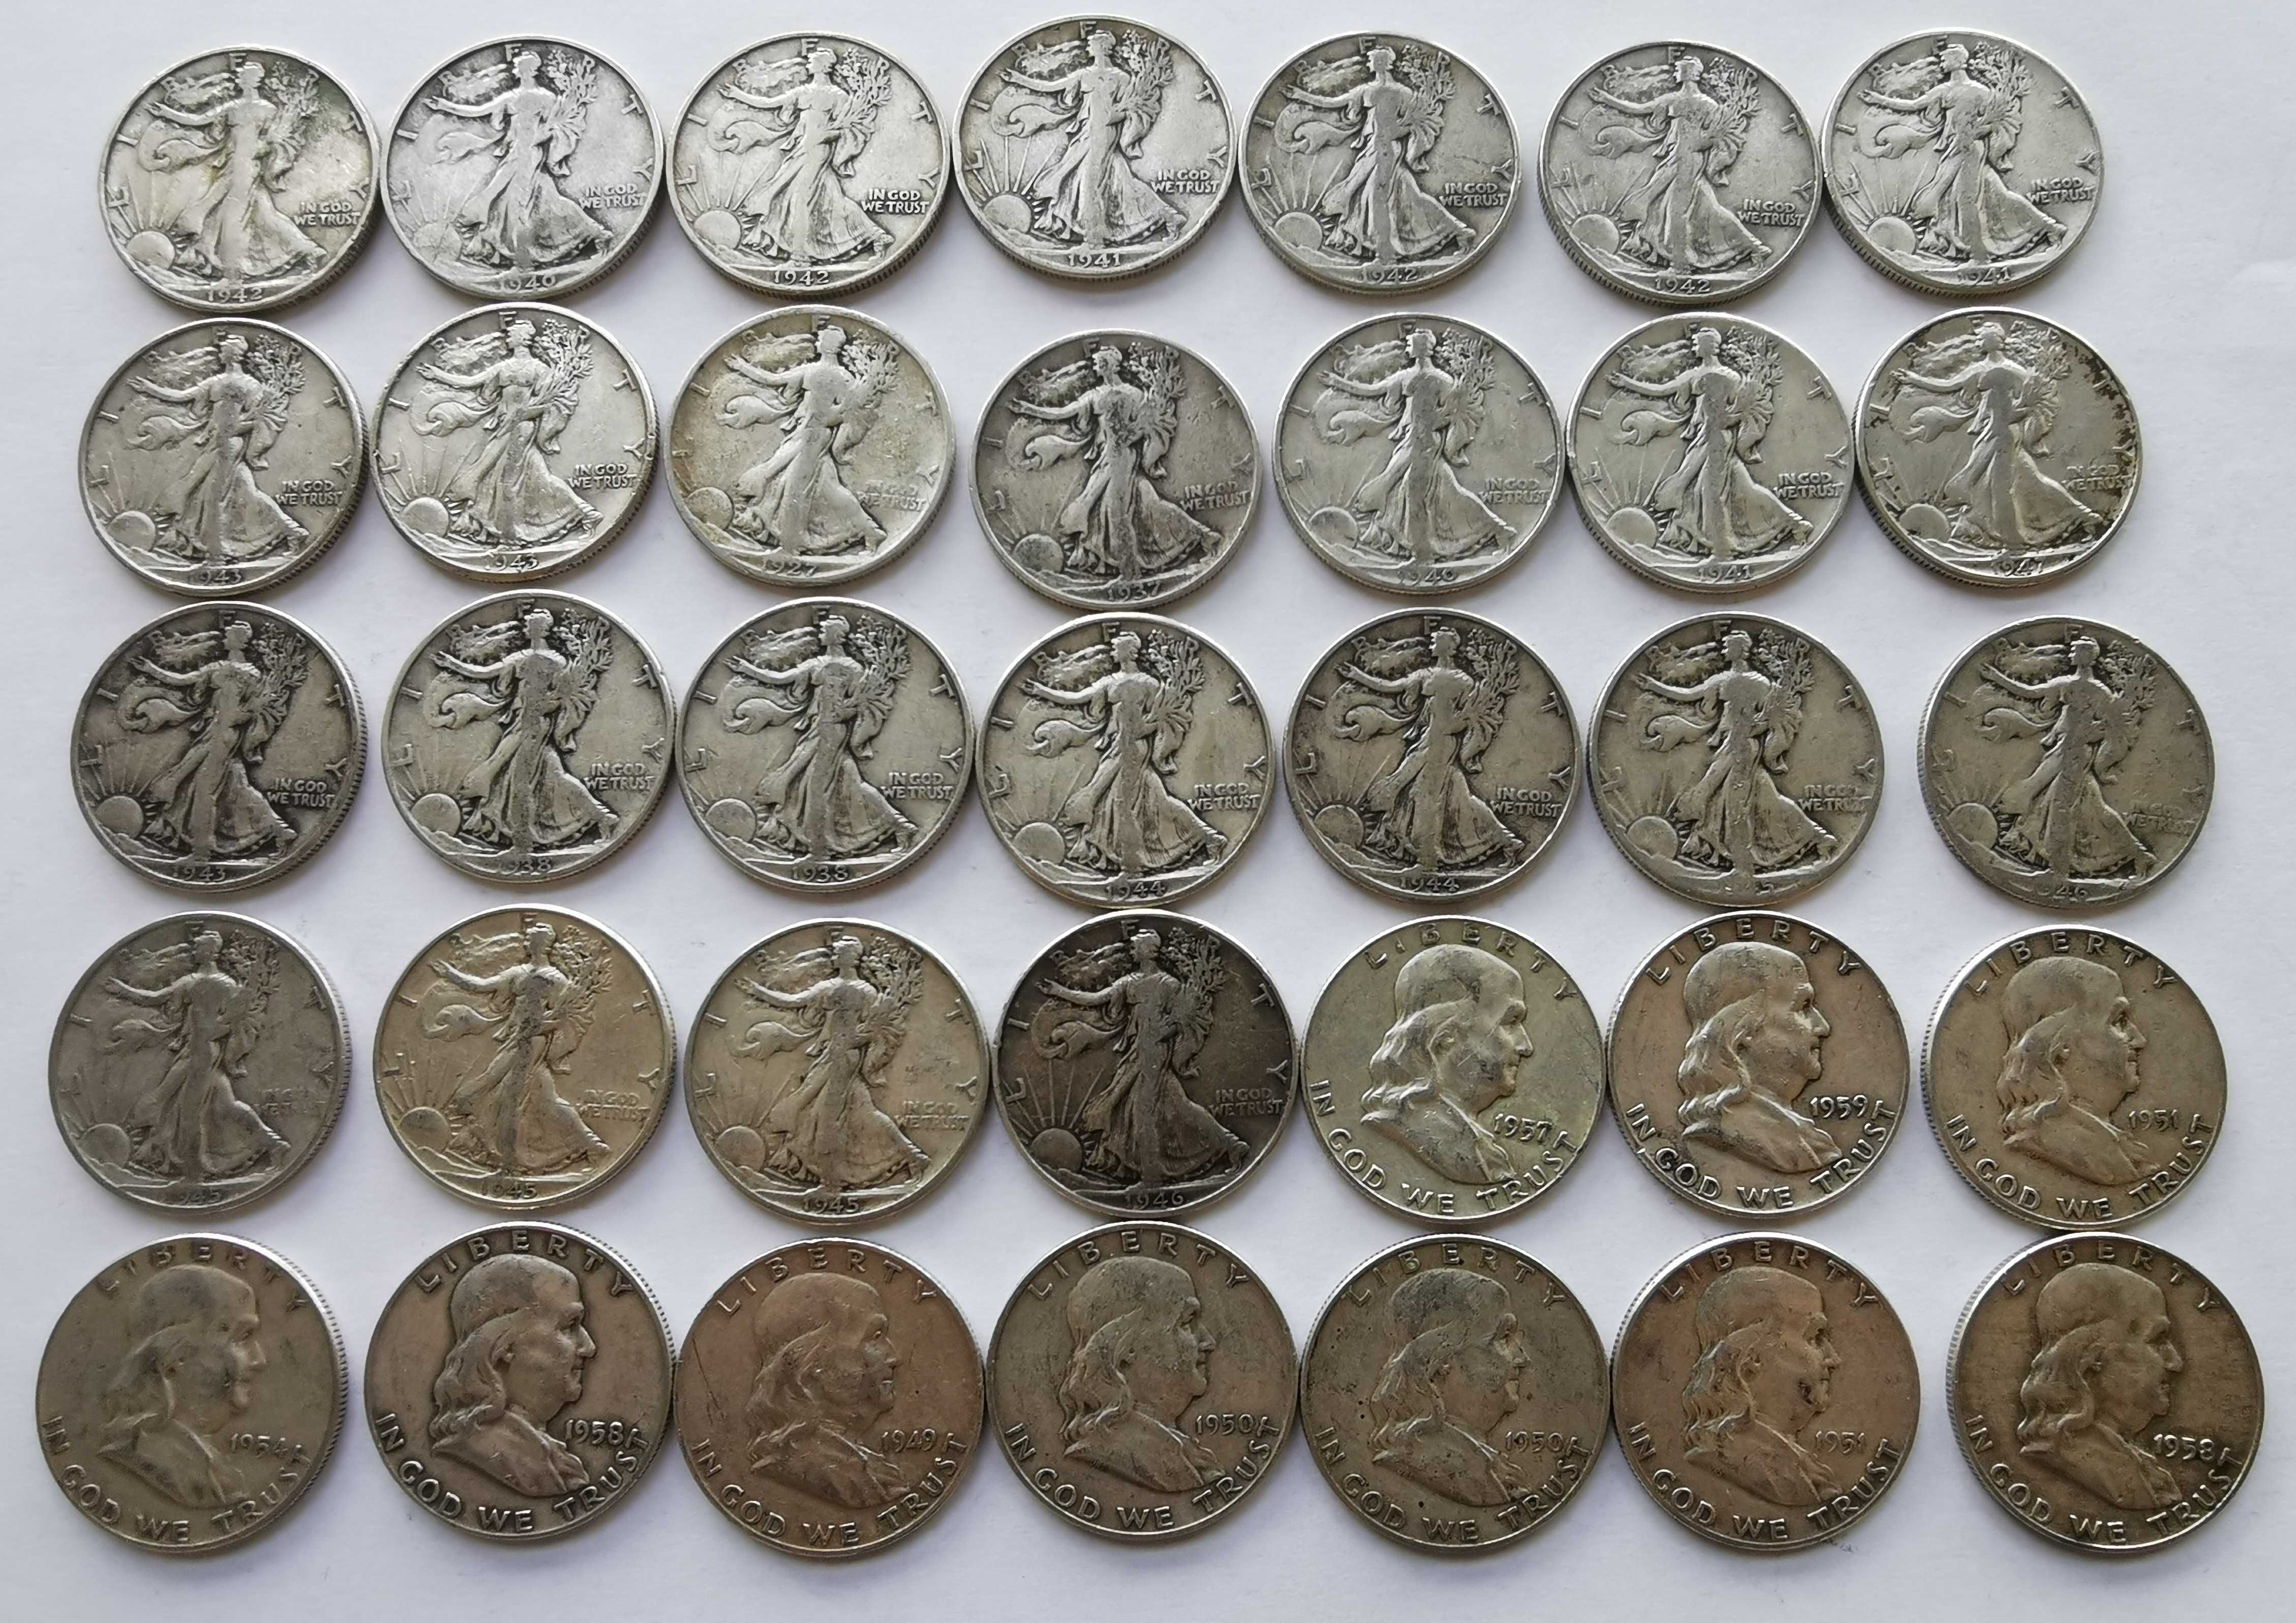 Srebrny zestaw 35 monet half dolar USA lata od 1927 do 1959 oryginalne